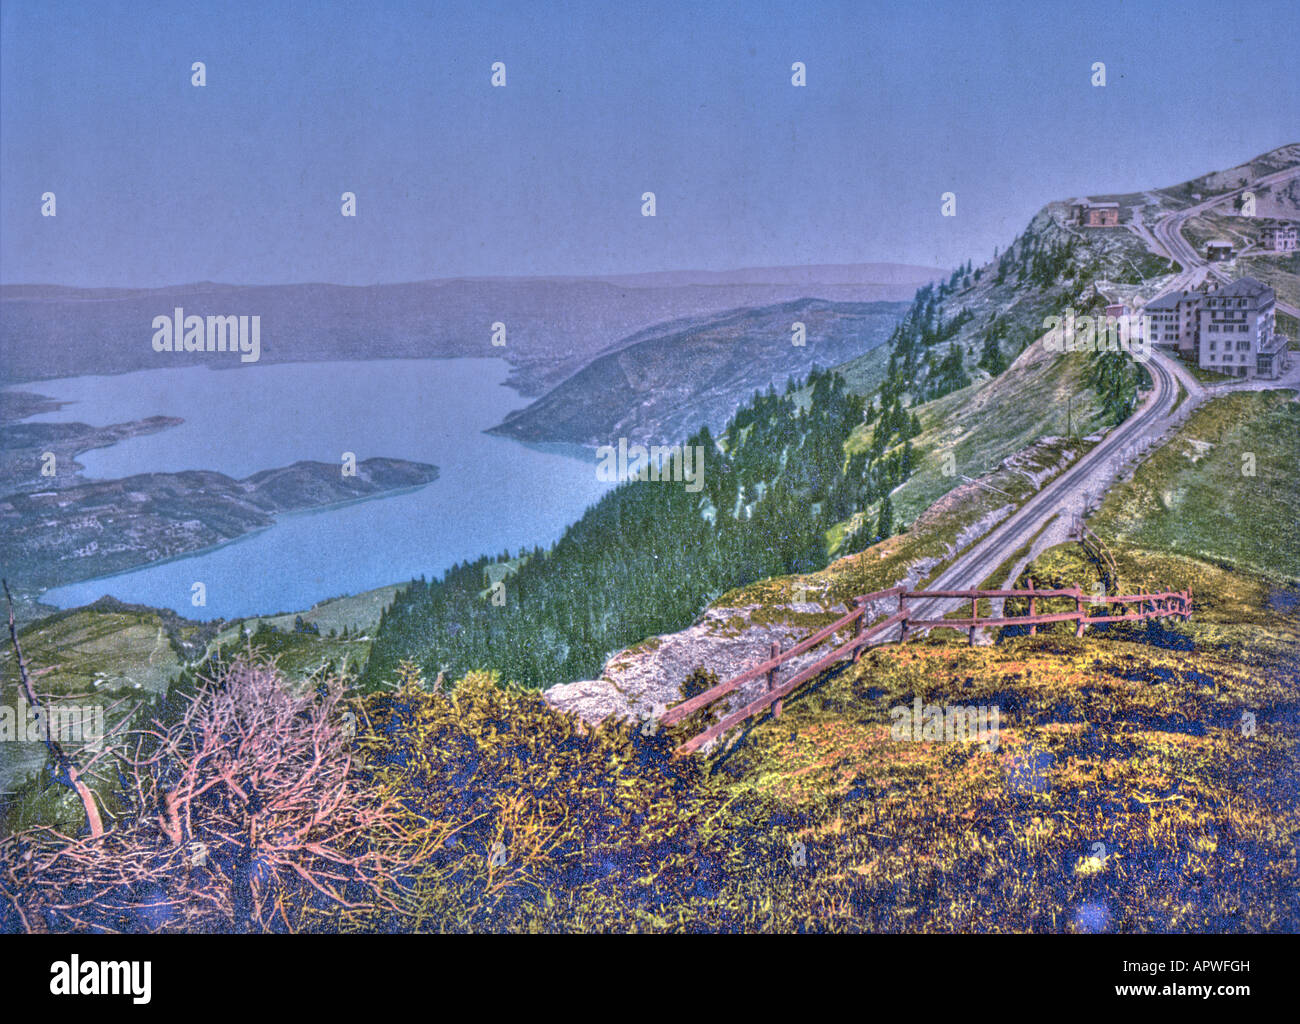 Staffel and Zug Lake, Rigi, Switzerland Stock Photo